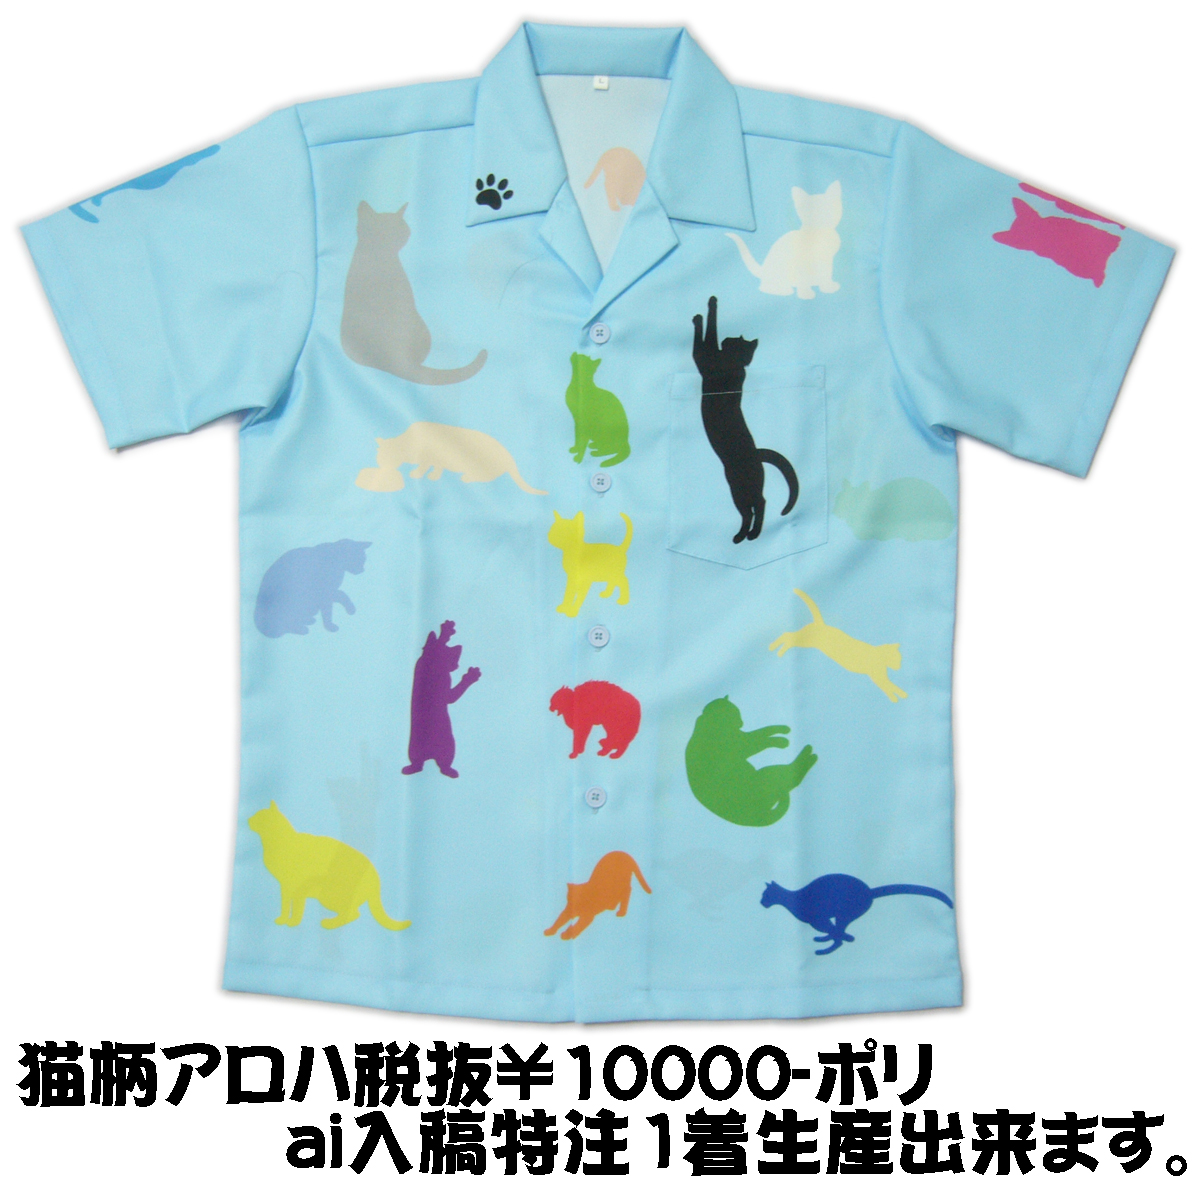 楽天市場 一枚特注可 猫 アロハシャツ メンズ 大きいサイズ アロハoem ハワイアンシャツ 3l 4l 5l オリジナル アロハシャツ 作成 １枚から 和柄tシャツ梵字tシャツの紅雀本舗